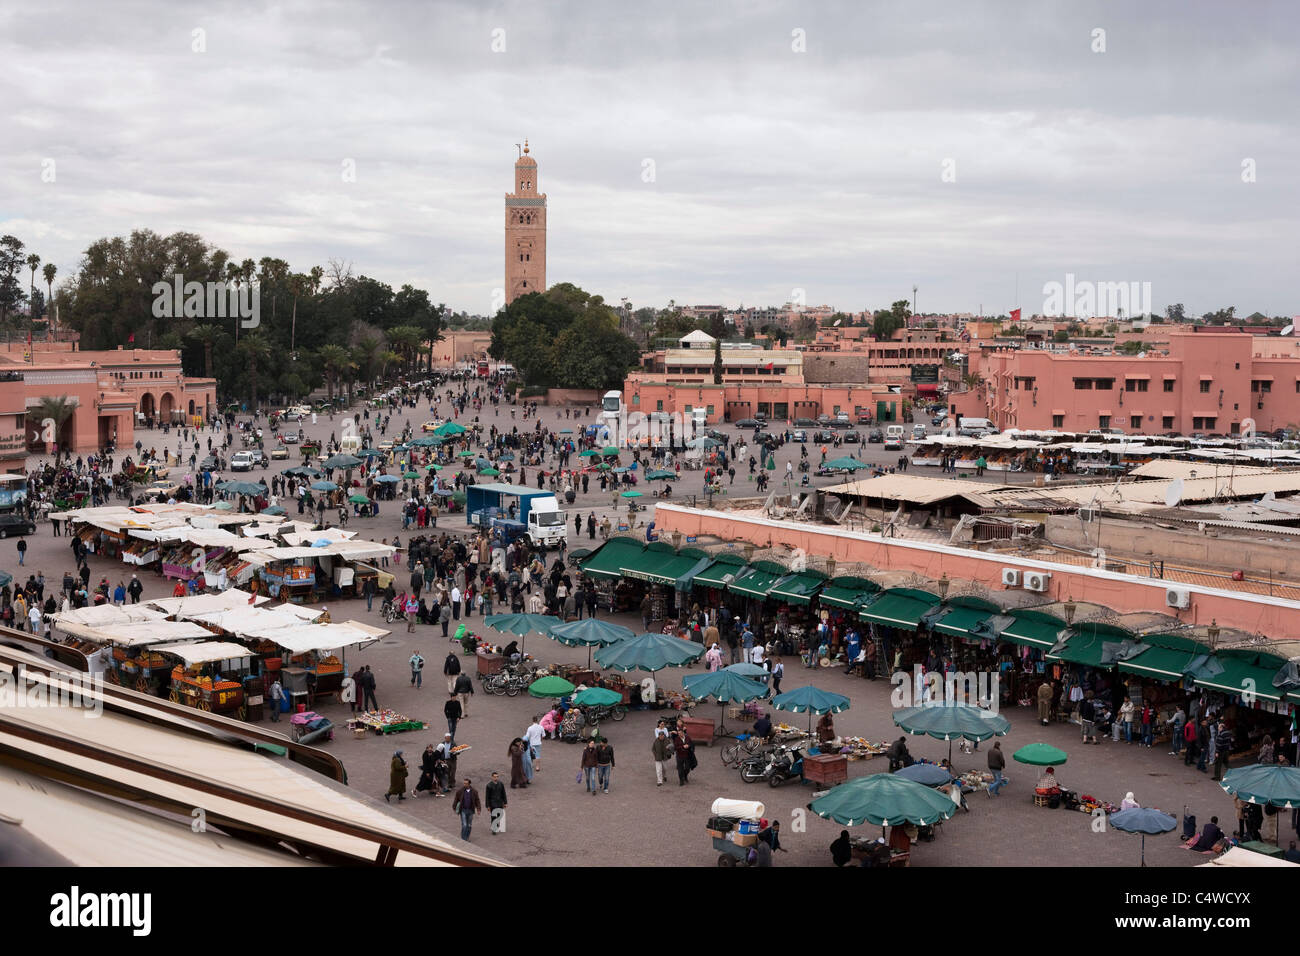 Platz Jemaa El Fna (Versammlung der Toten) mit der Koutoubia-Moschee im Hintergrund. Marrakesch, Marokko. Stockfoto